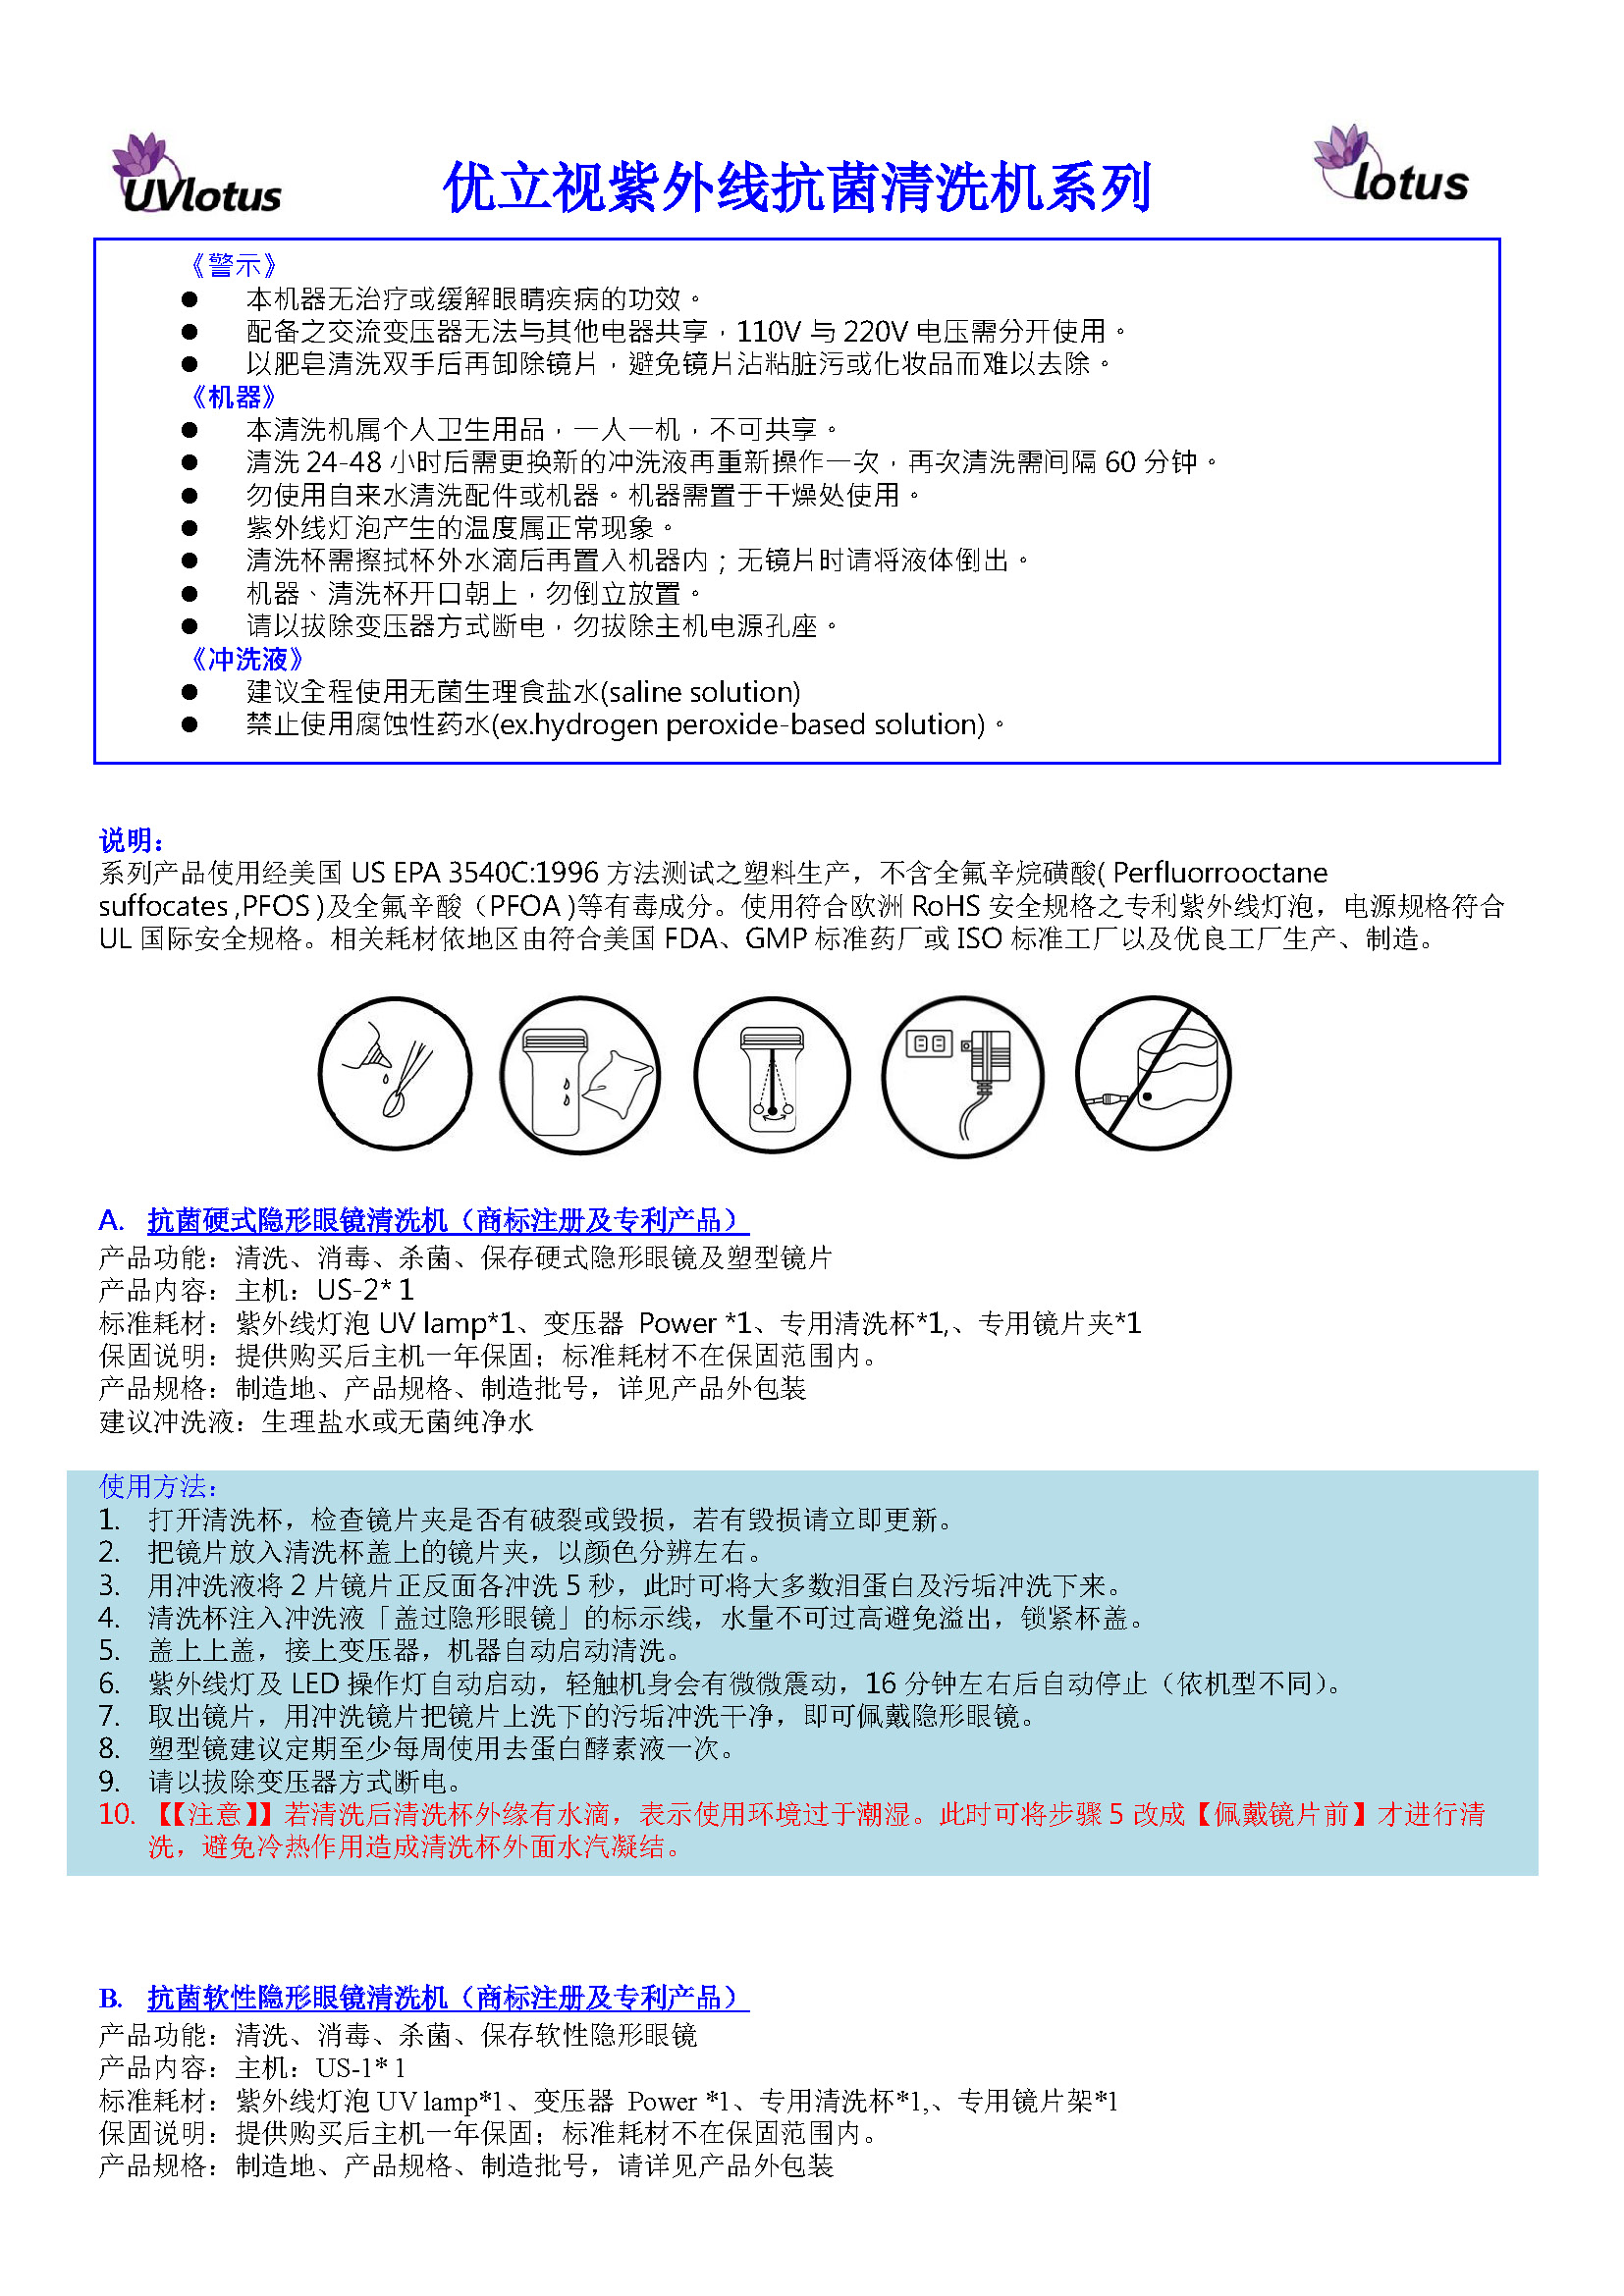 uvlotus user guide china-1